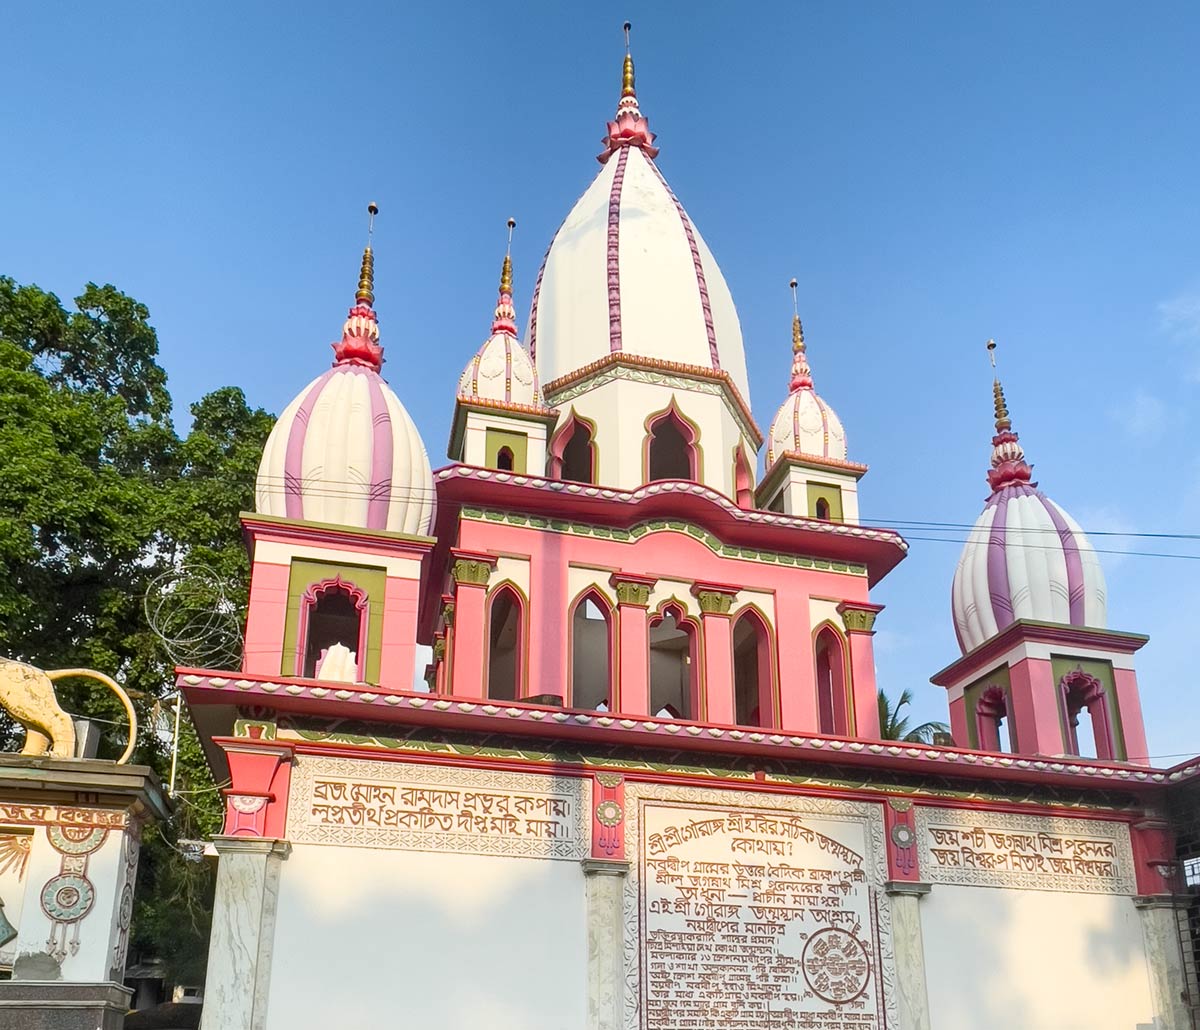 श्री चैतन्य के जन्मस्थान मंदिर, नबद्वीप का प्रवेश द्वार